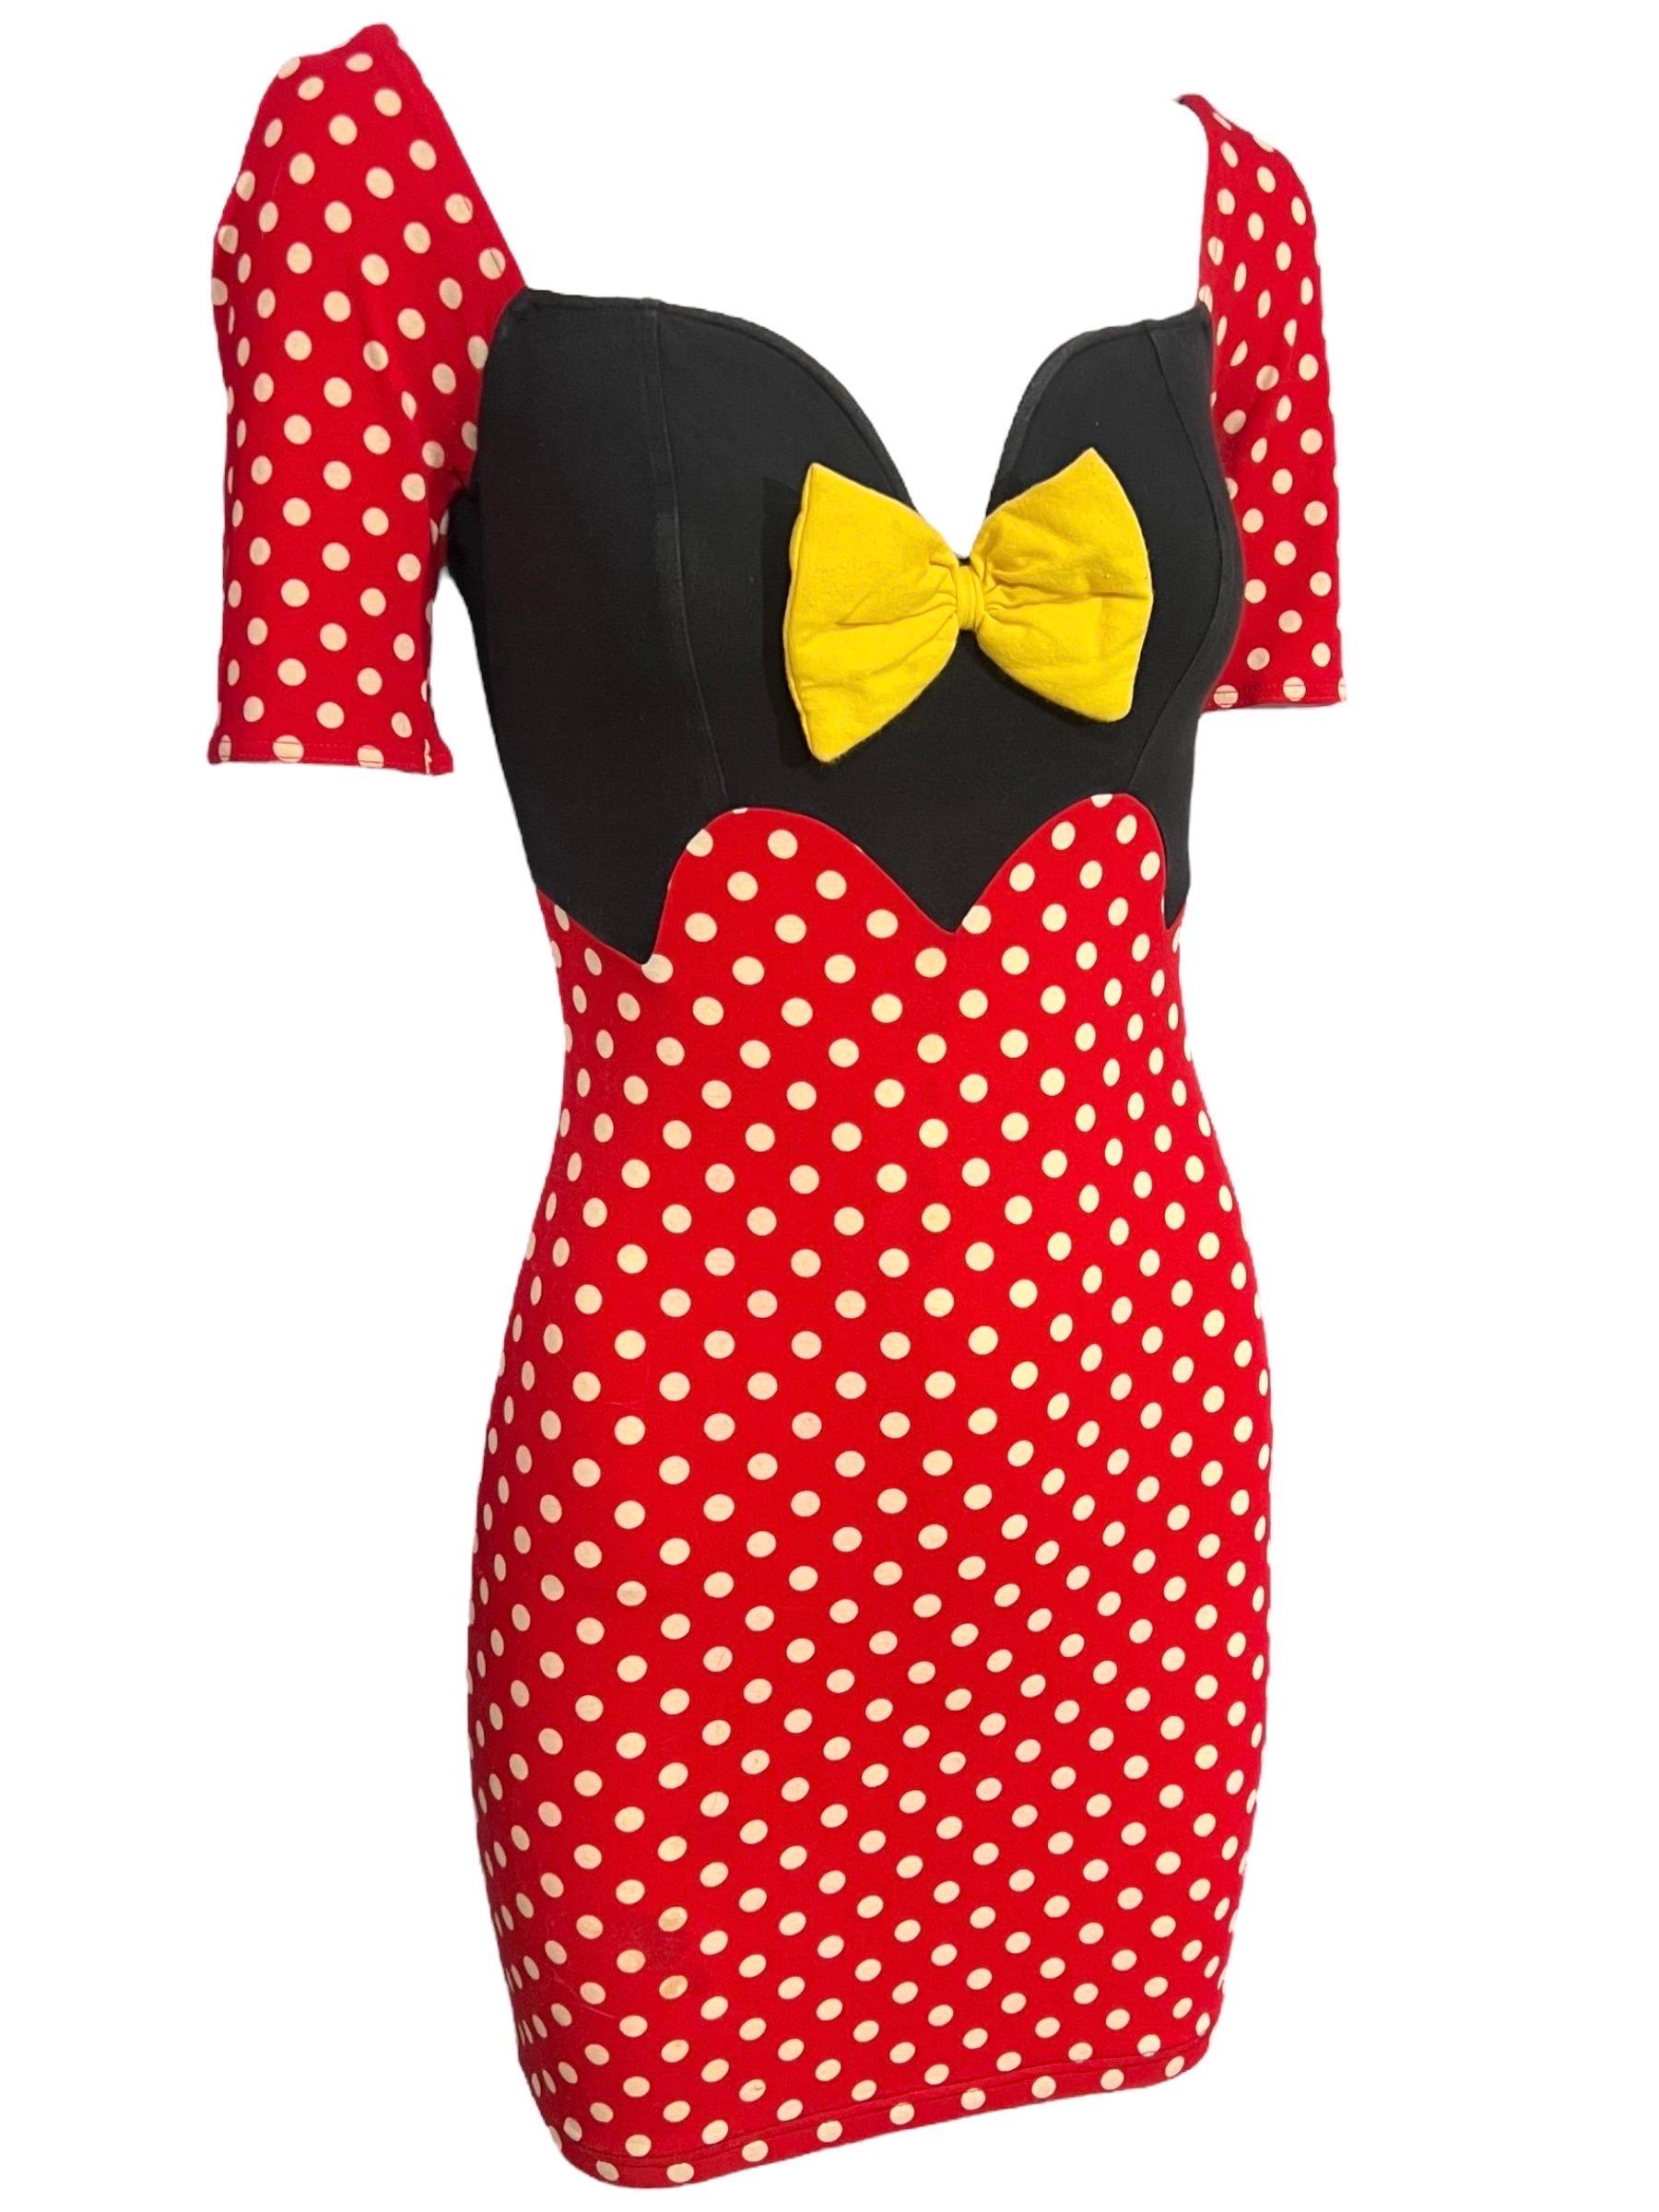 Super Spaß und skurrilen seltenen Moschino späten 80er / Anfang der 90er Jahre Polka Dot Minnie Mouse inspiriert Kleid mit einer gelben Schleife akzentuiert.
Mit herzförmigem Ausschnitt und CAP-Ärmeln.
Ein ikonisches Stück der Geschichte von Franco